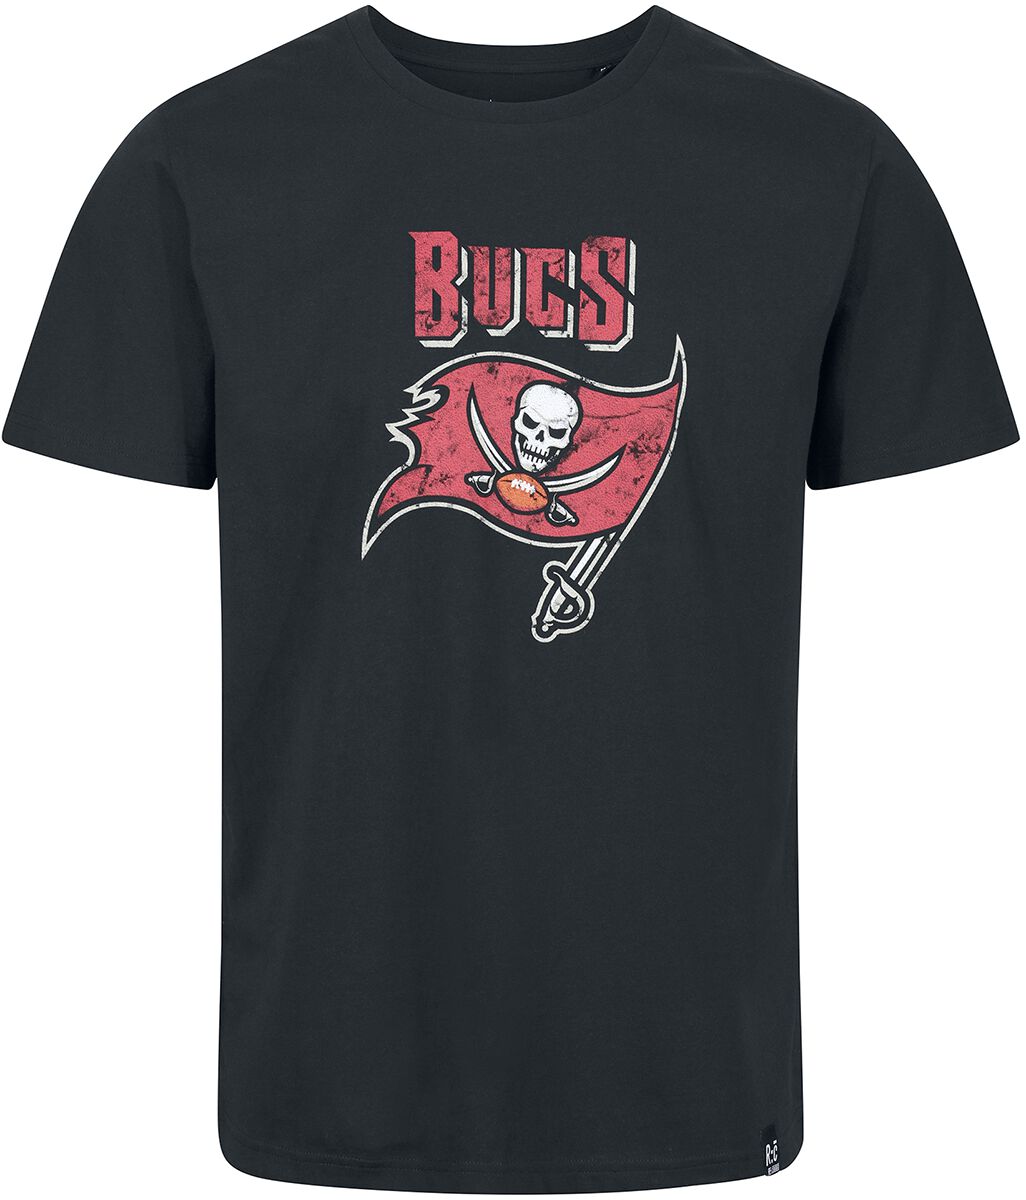 Recovered Clothing T-Shirt - NFL Buccs Logo - S bis XXL - für Männer - Größe S - schwarz